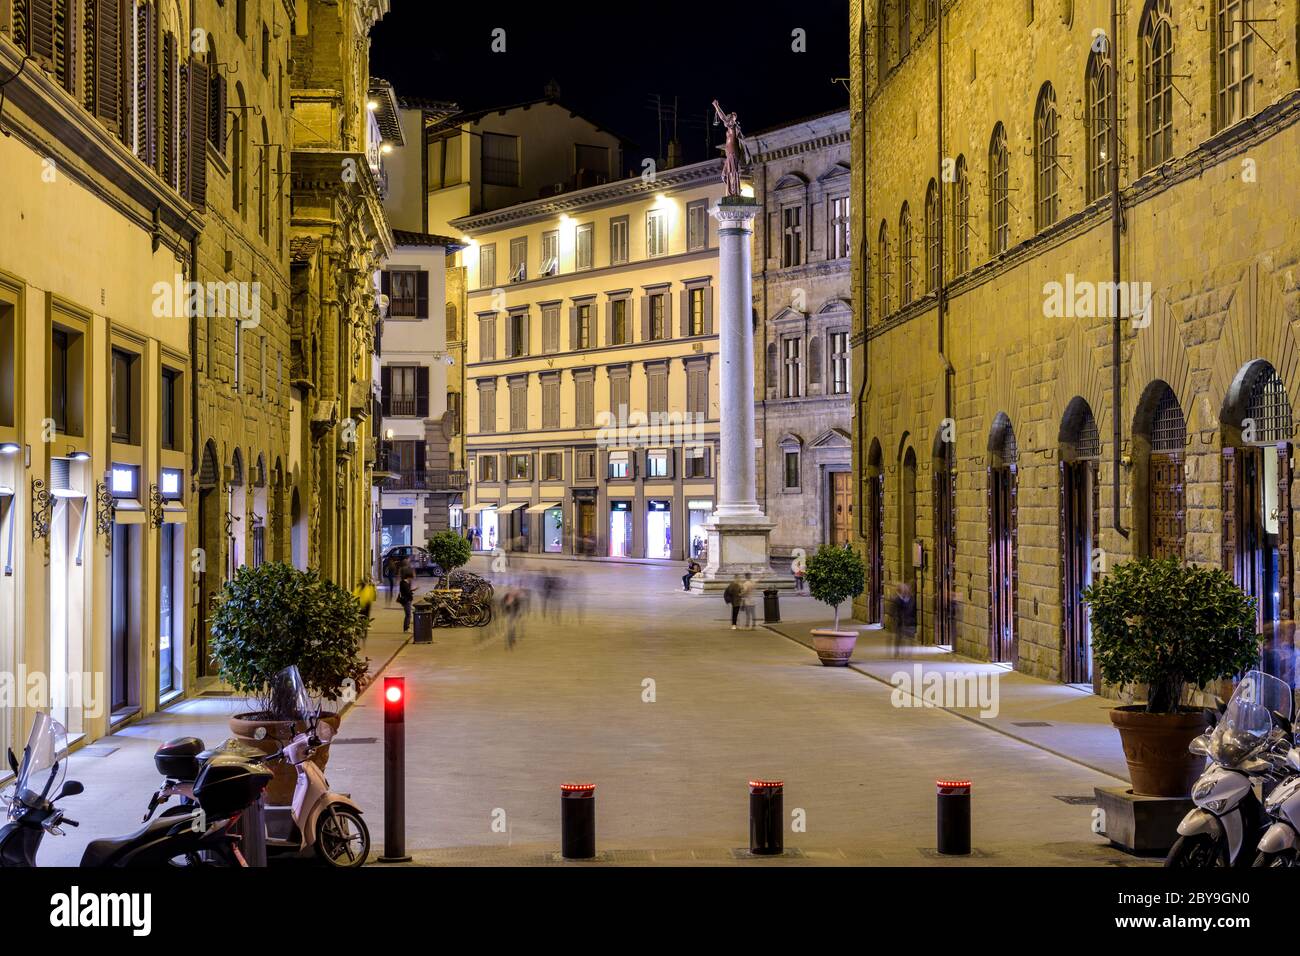 Piazza Santa Trinita - vue de nuit de la Piazza Santa Trinita, avec une ancienne colonne romaine - colonne de justice debout au milieu, Florence, Italie. Banque D'Images